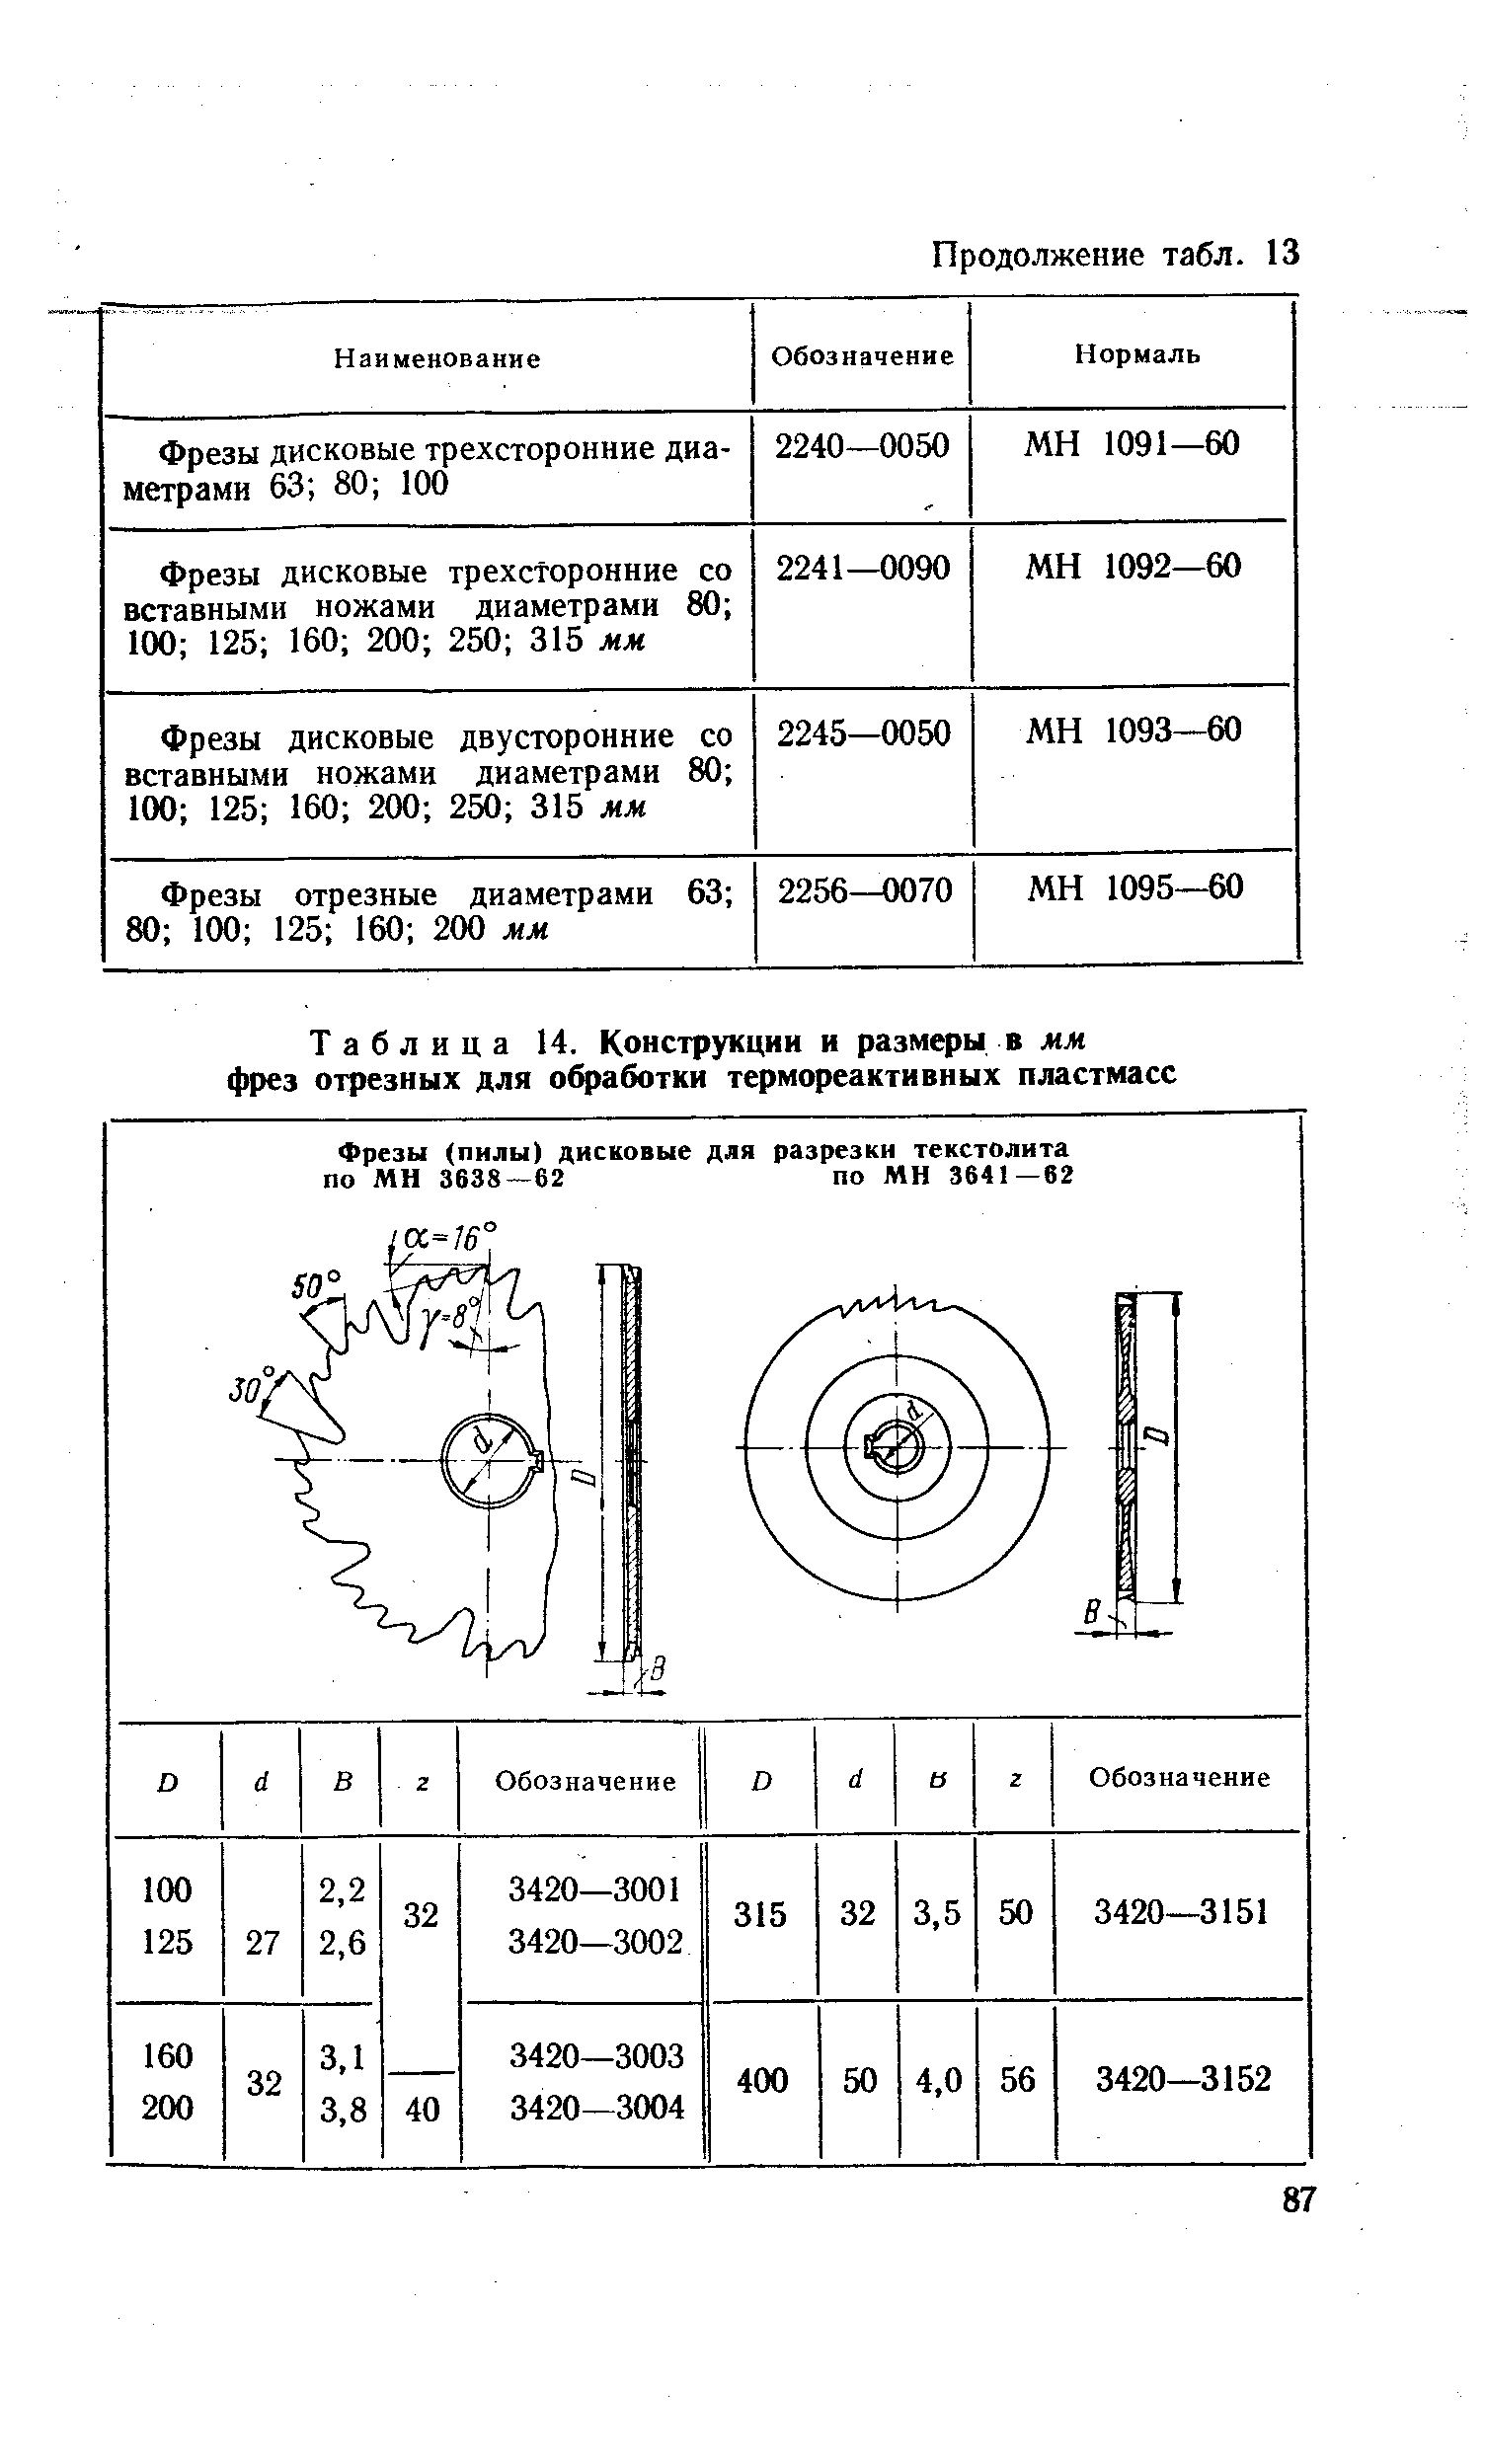 Таблица 14. Конструкции и размеры в мм фрез отрезных для обработки термореактивных пластмасс
